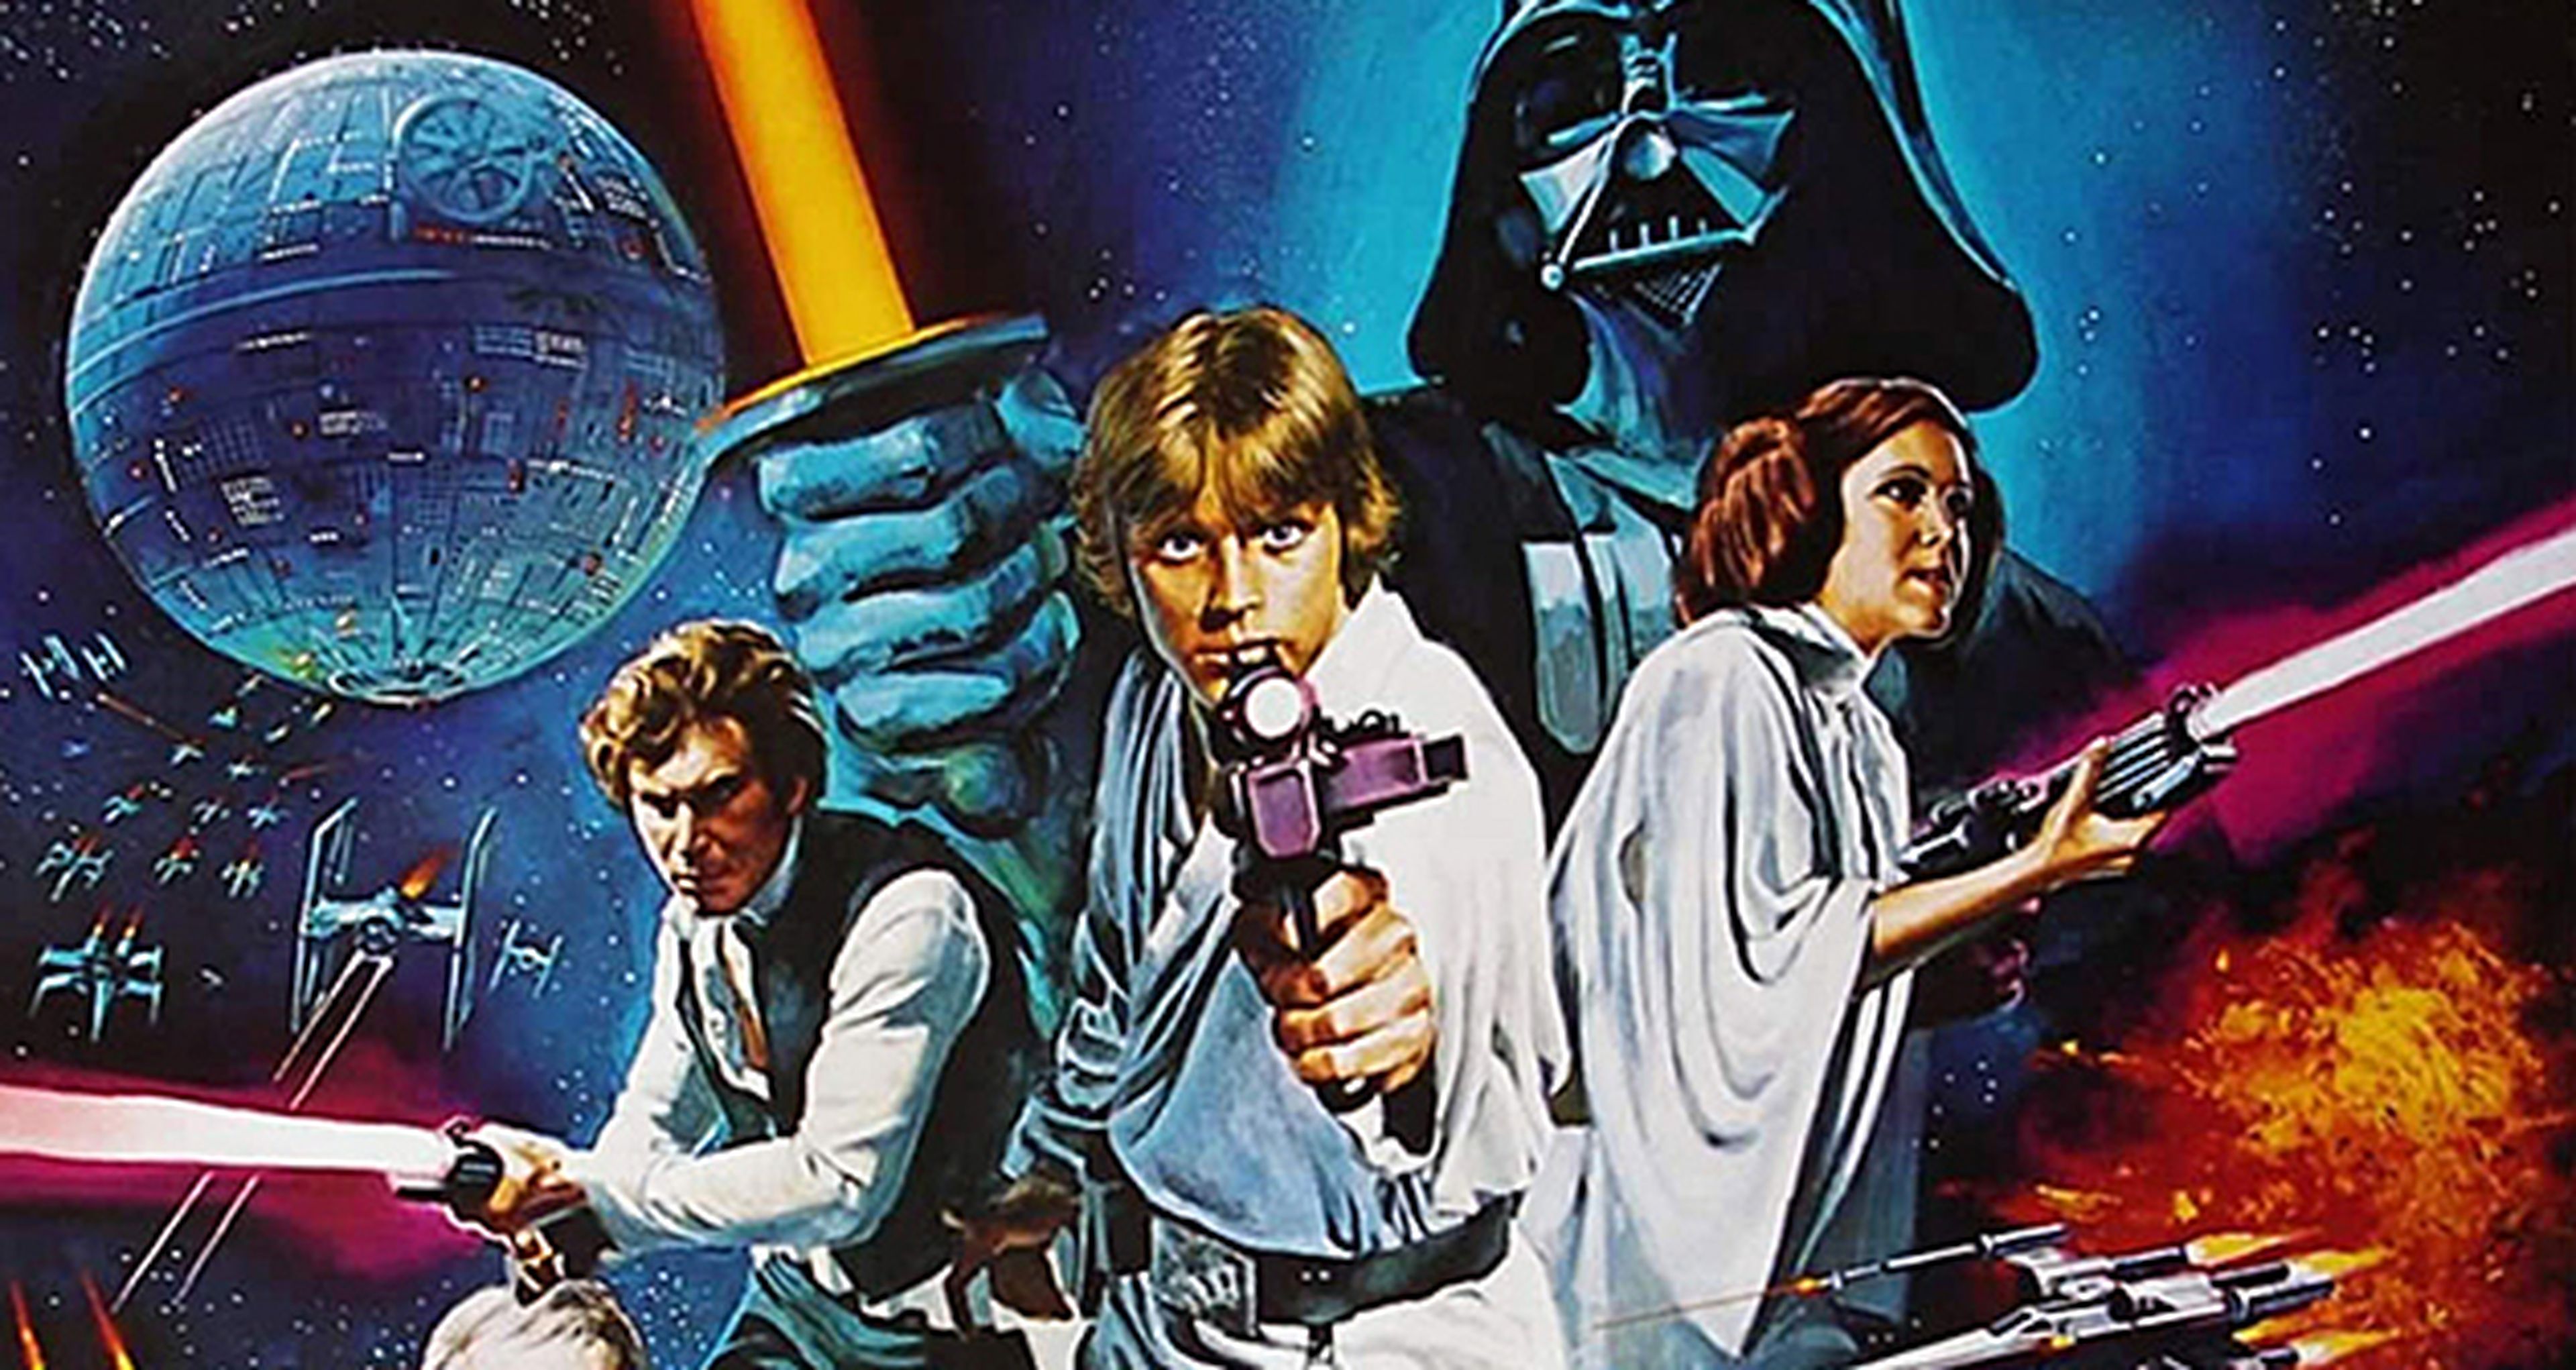 Cine de ciencia ficción: Crítica de Star Wars (La guerra de las galaxias)